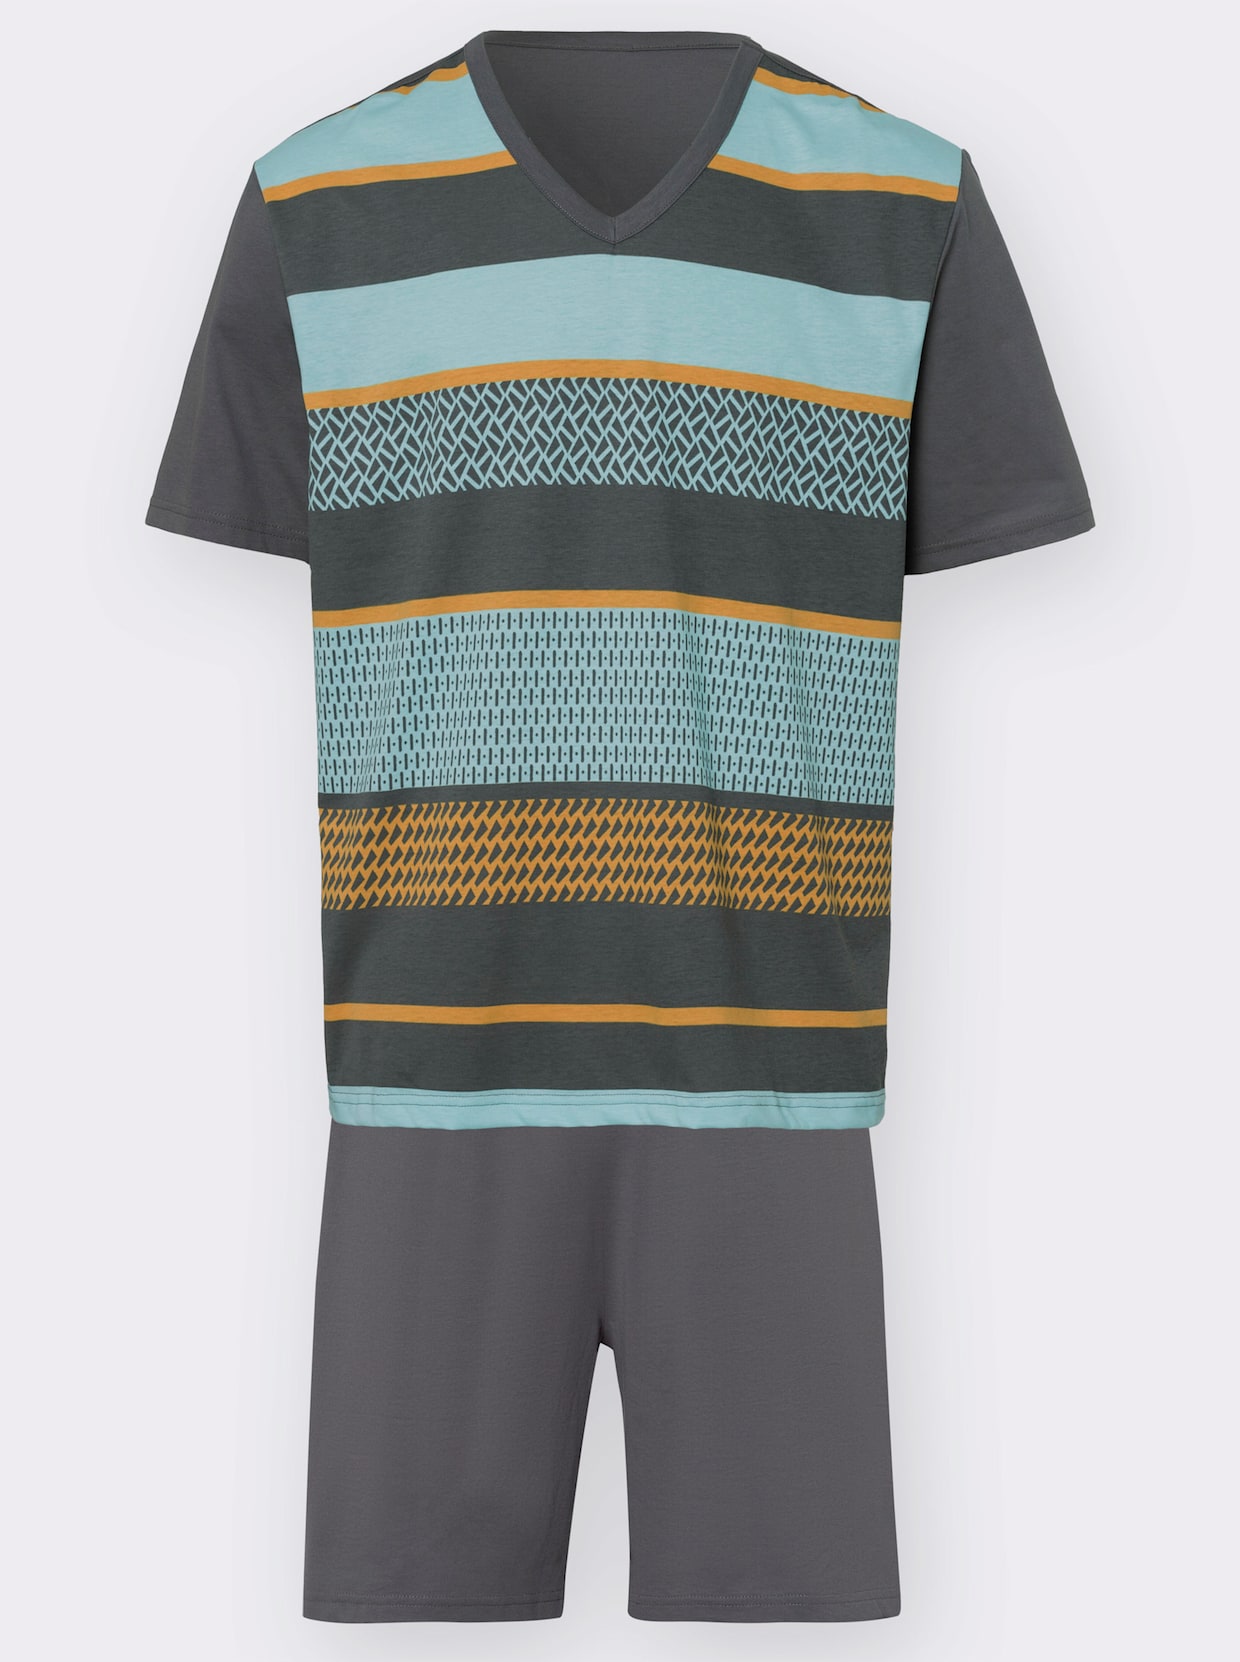 Krátke pyžamo - Antracitovo-akvamarínovo-okrová